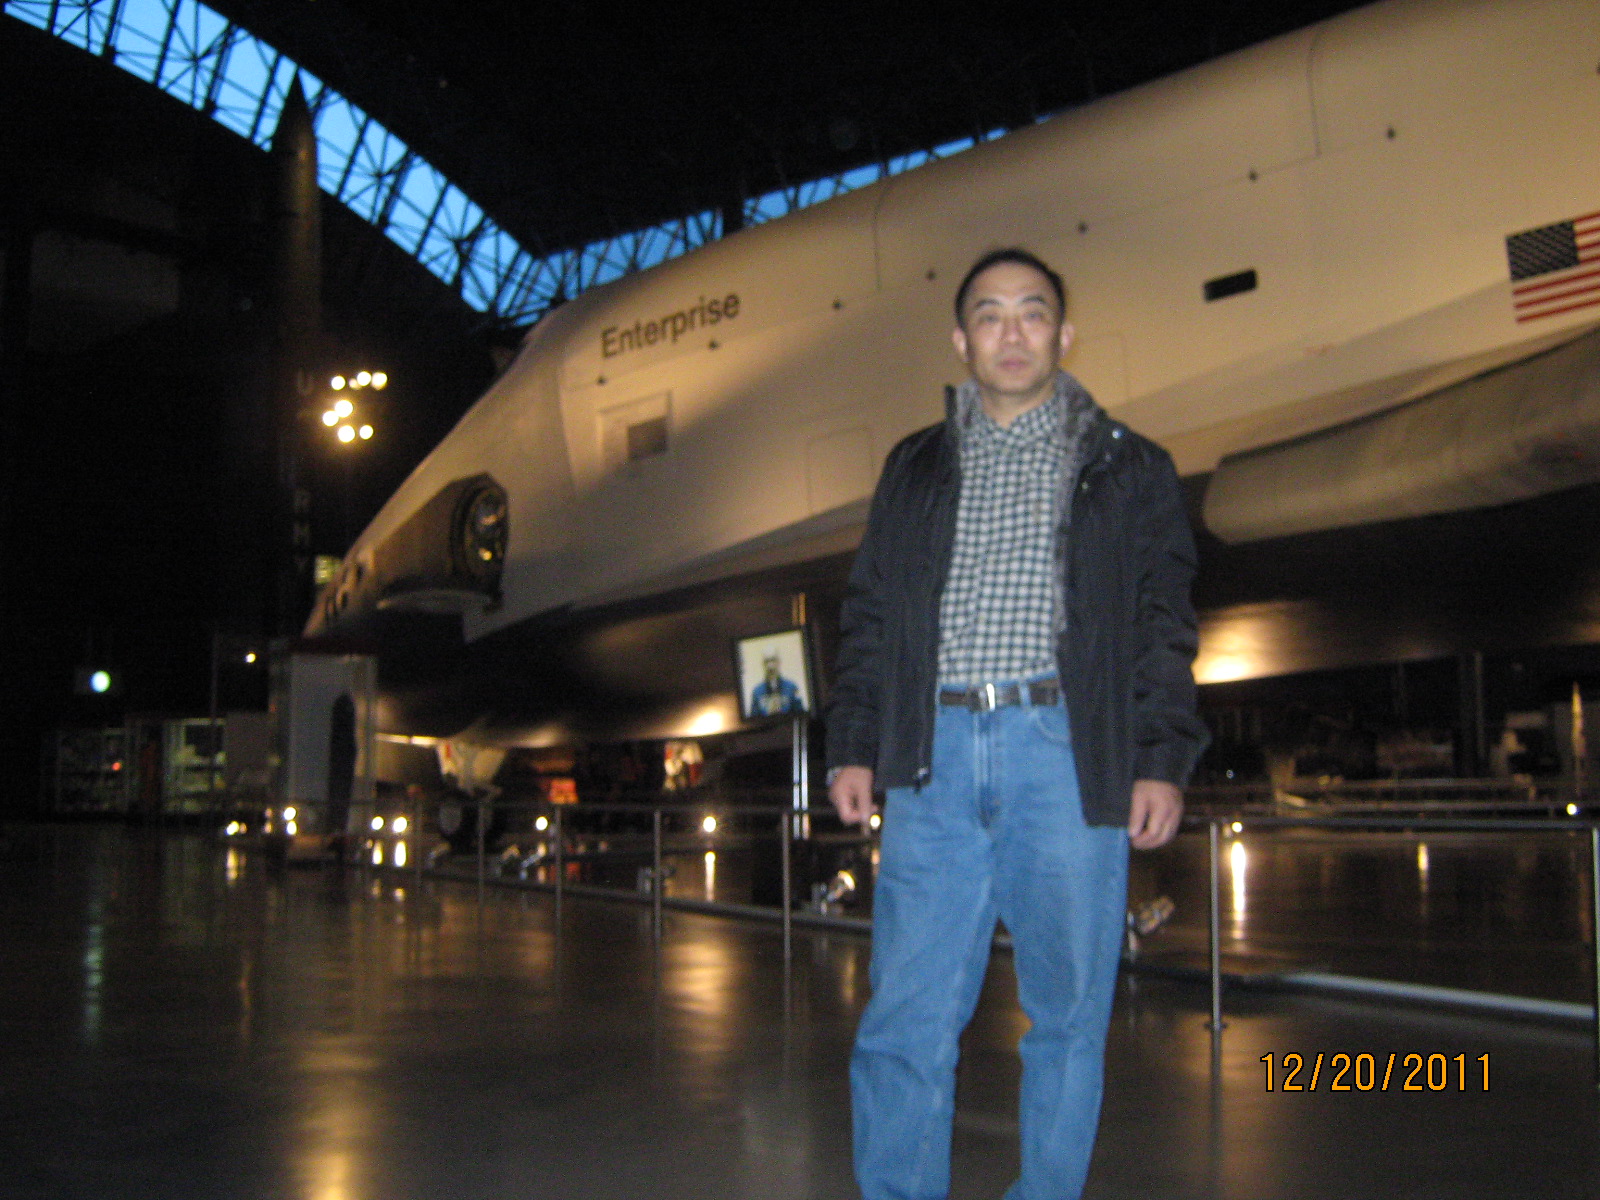 IMG_1868.JPG : Dec 20, 2011 Air and Space Museum again